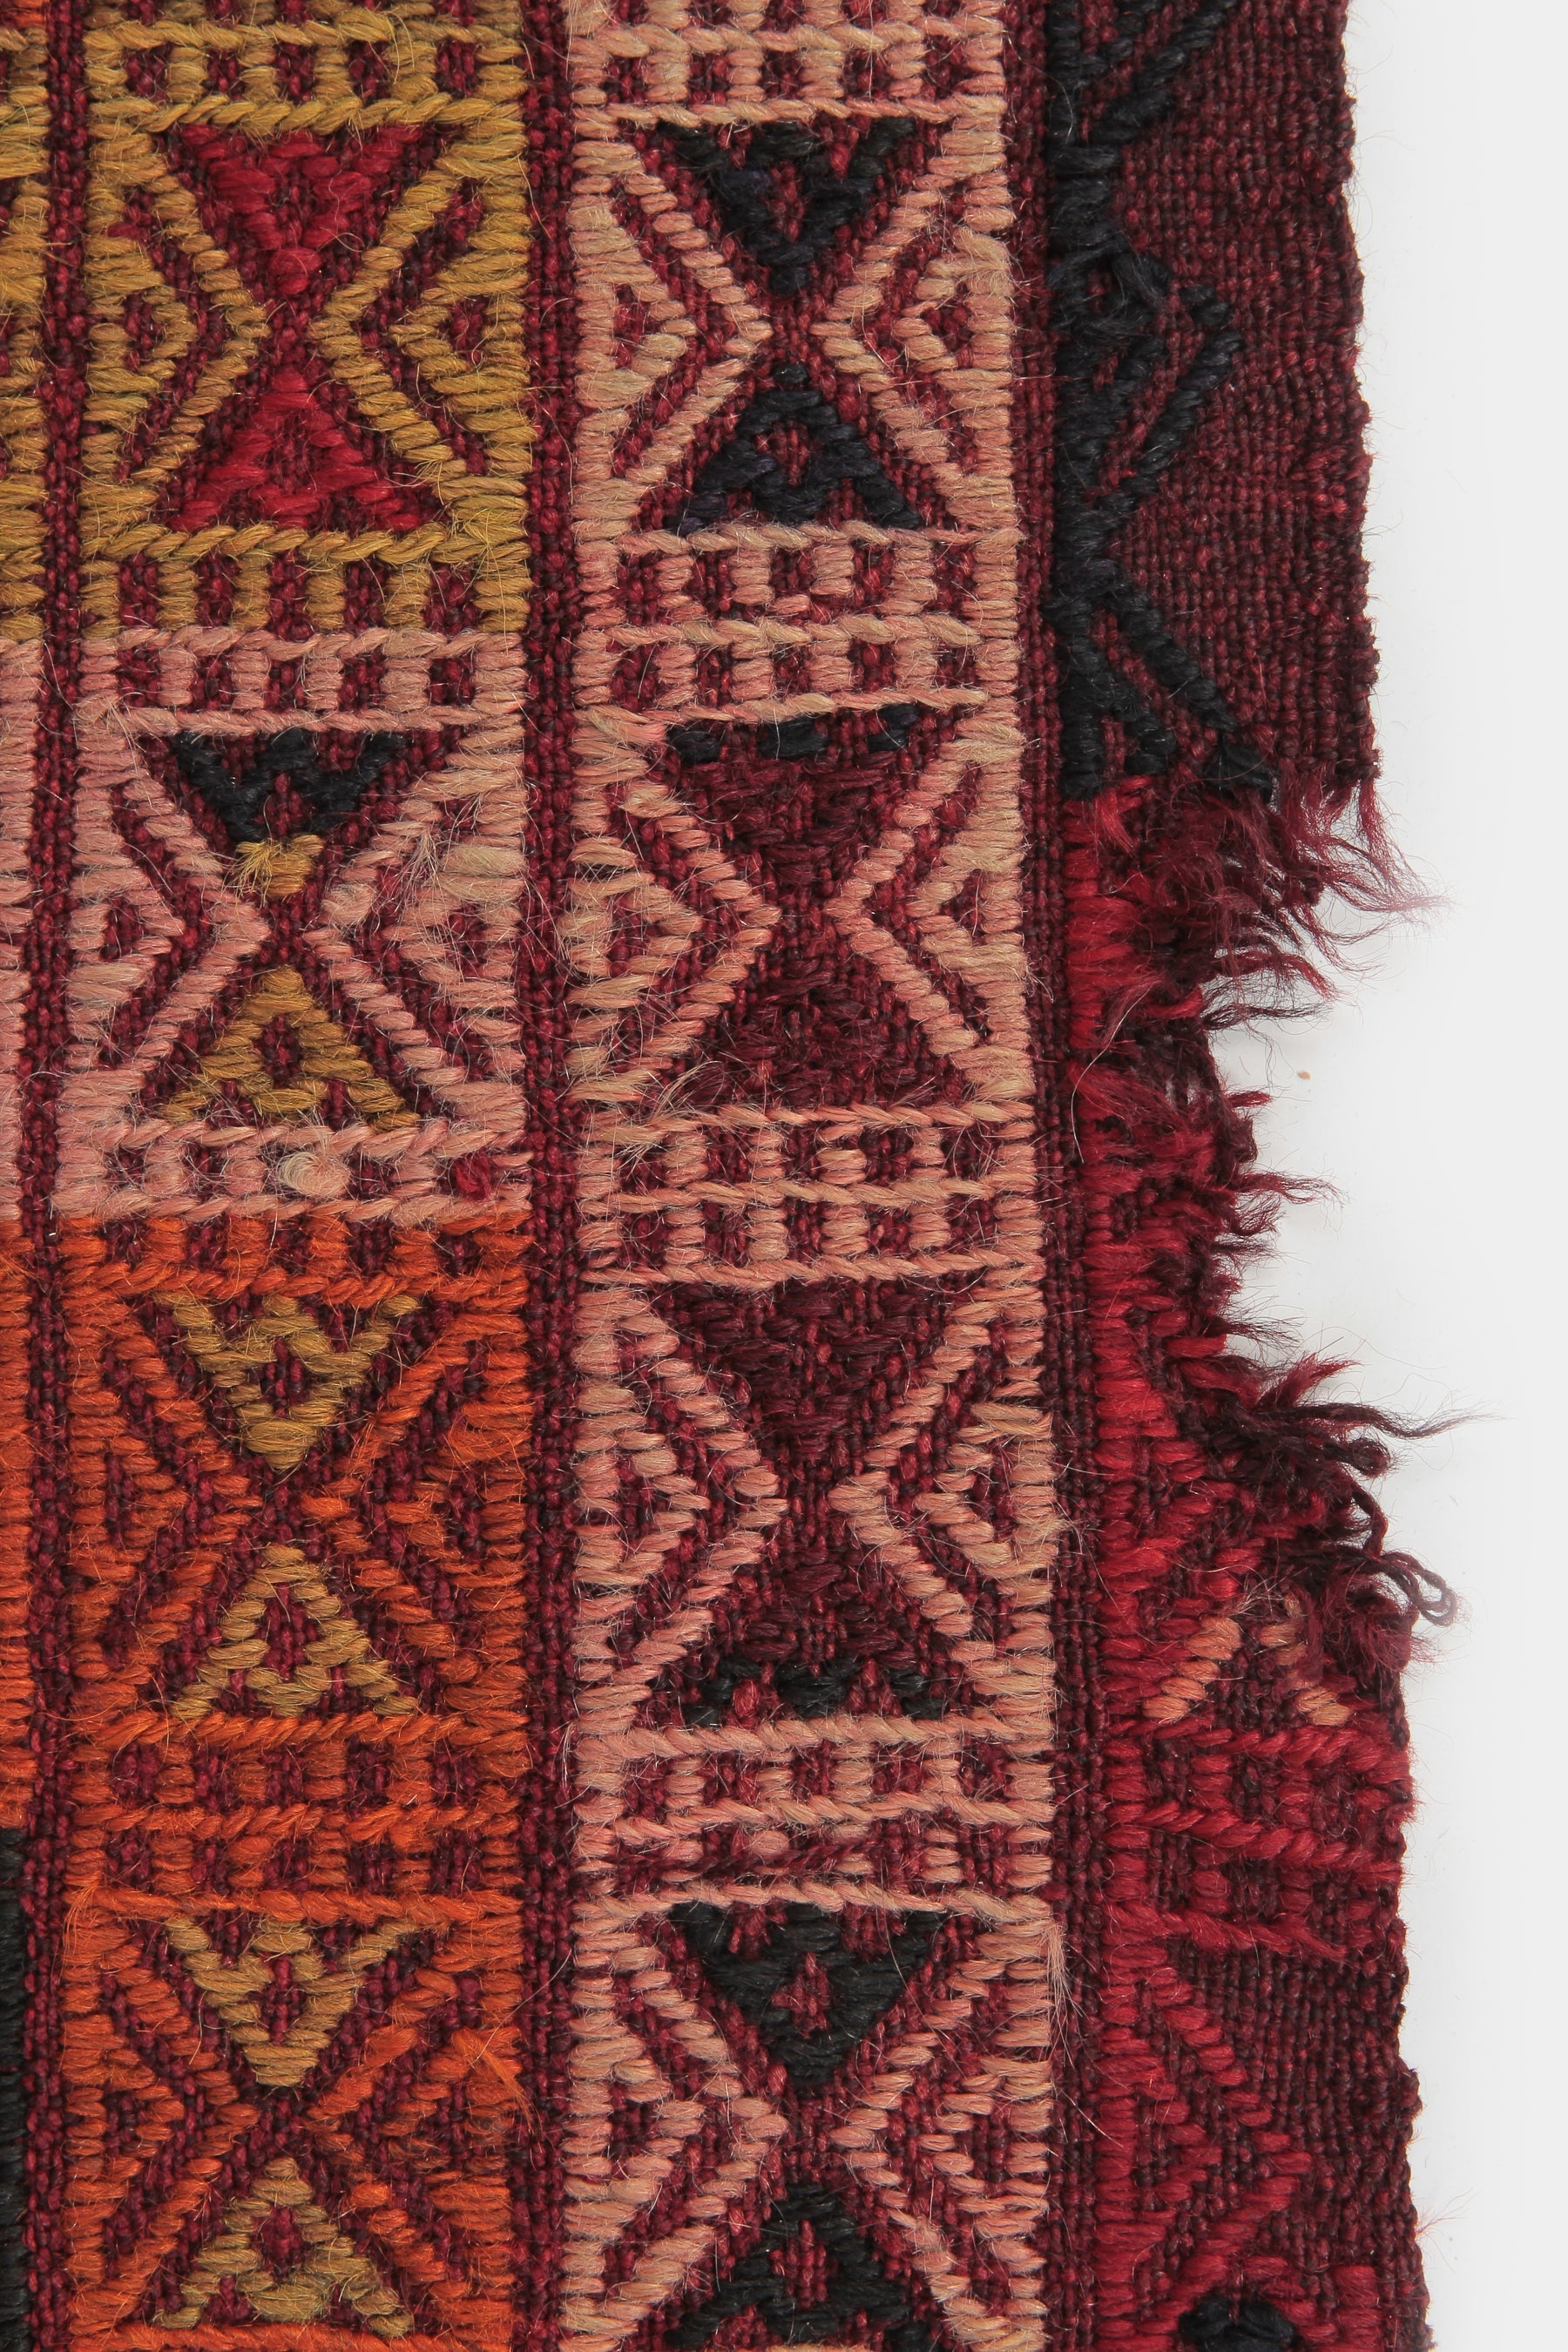 Belutschenteppich mit geometrischem Muster, geknüpft und gewoben